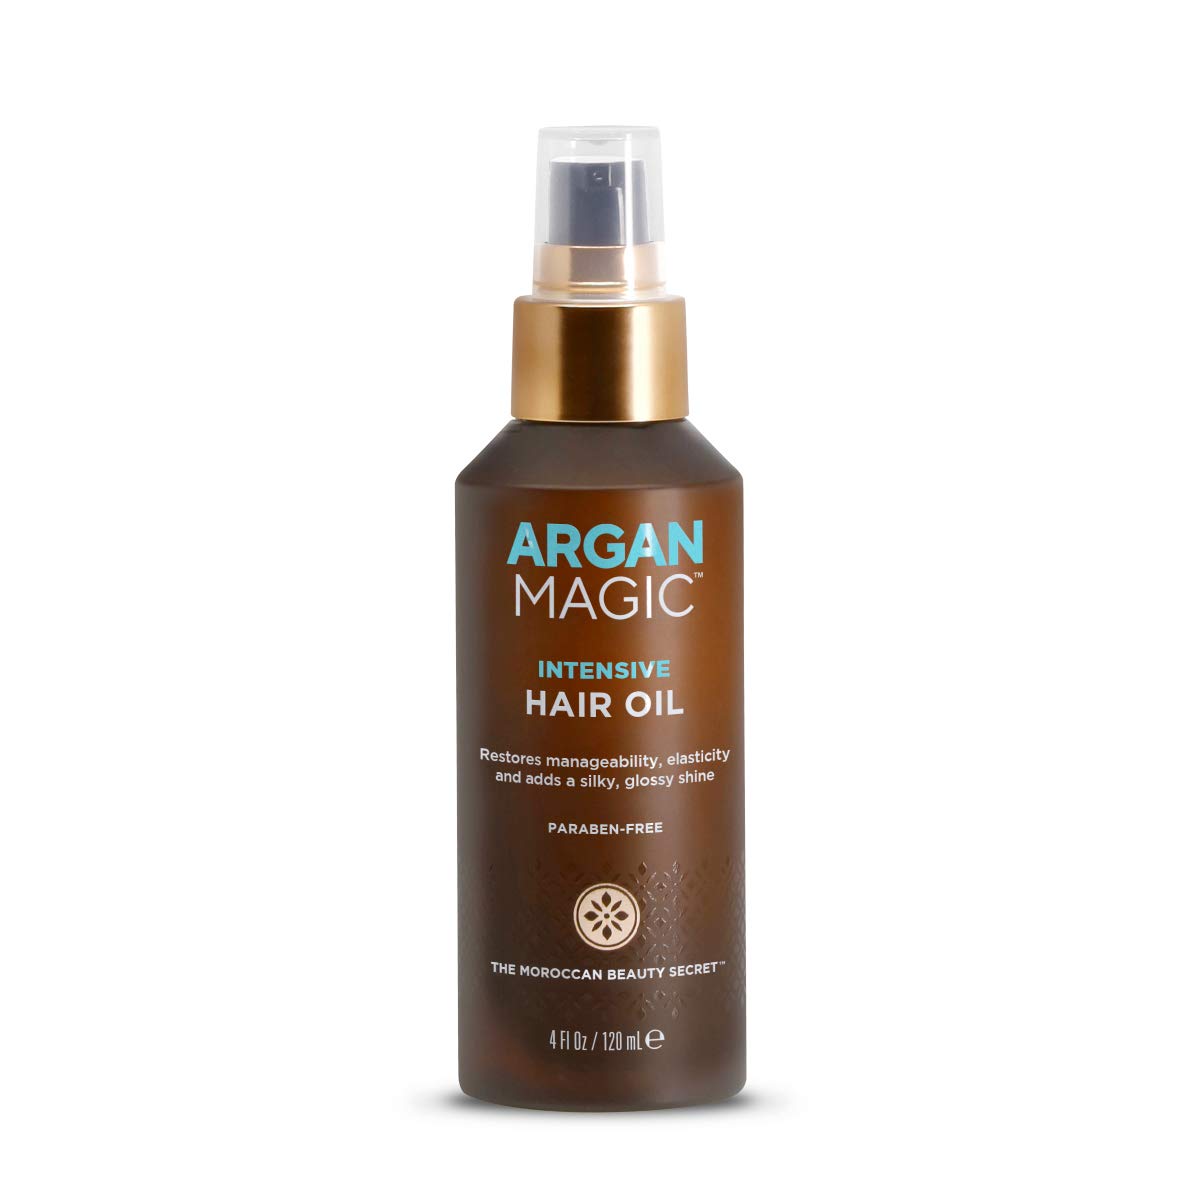 Argan Magic Intensive Hair Oil